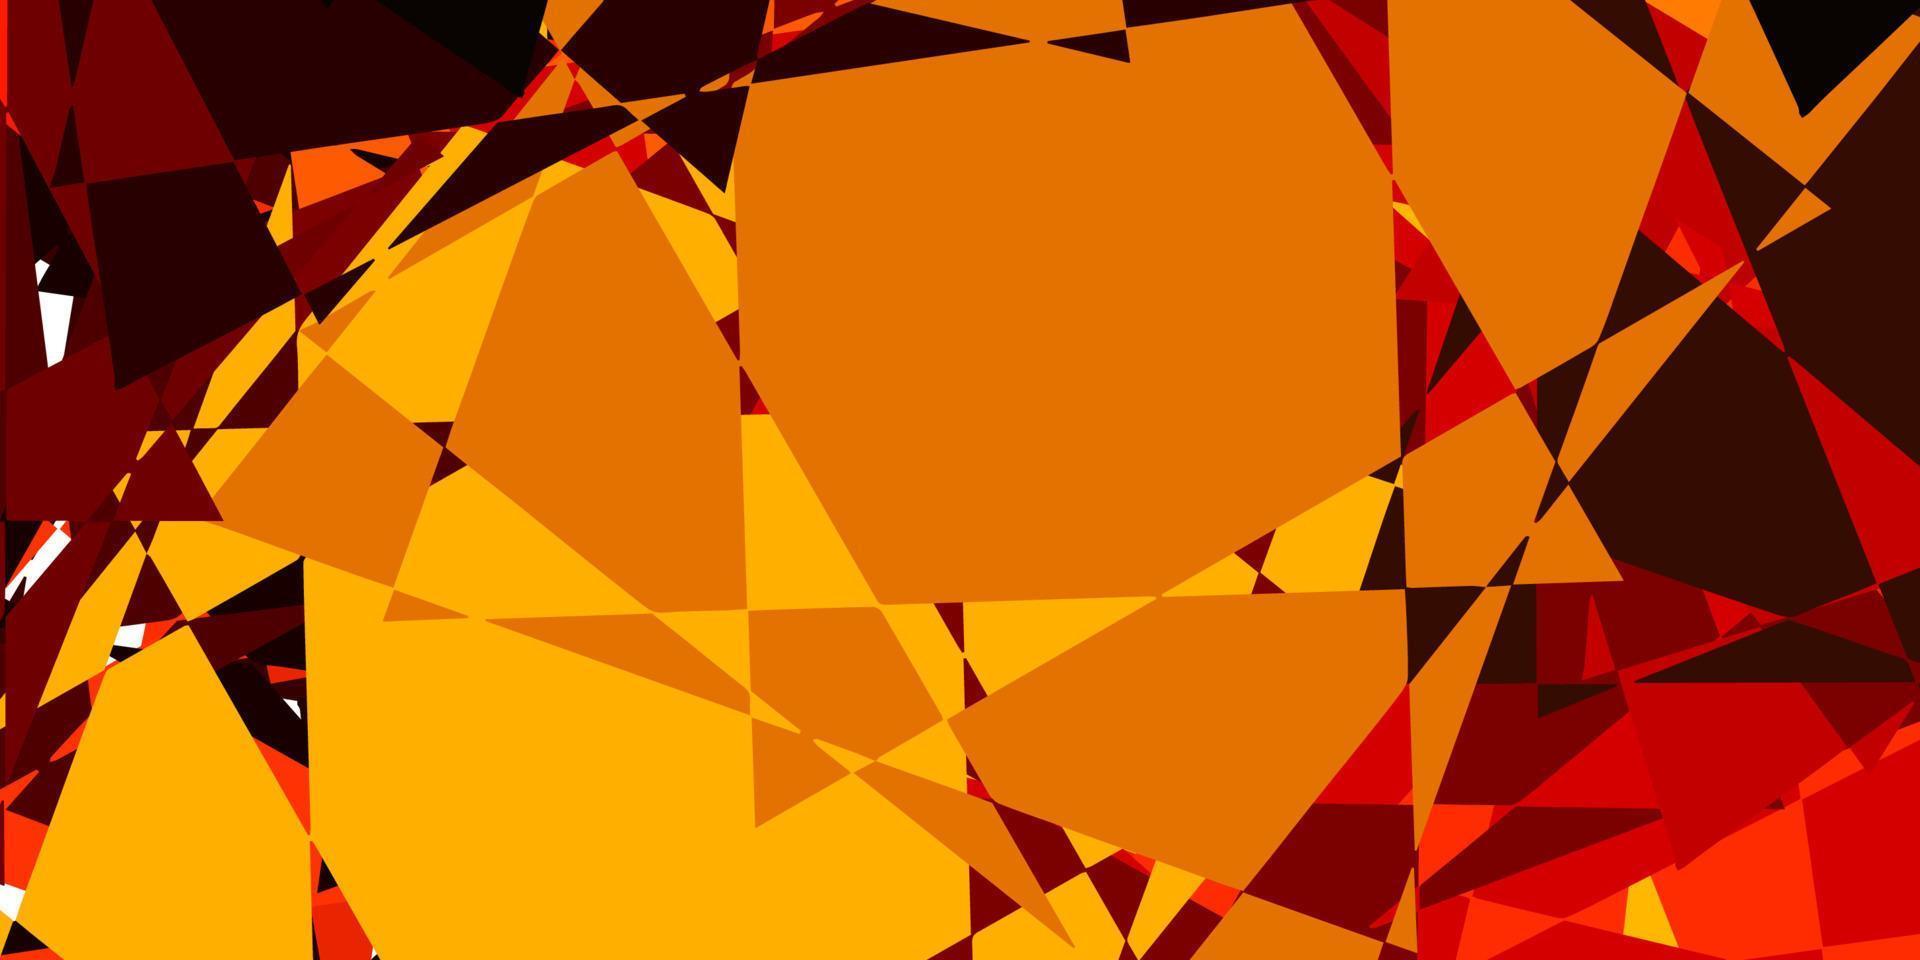 Fondo de vector naranja oscuro con formas poligonales.